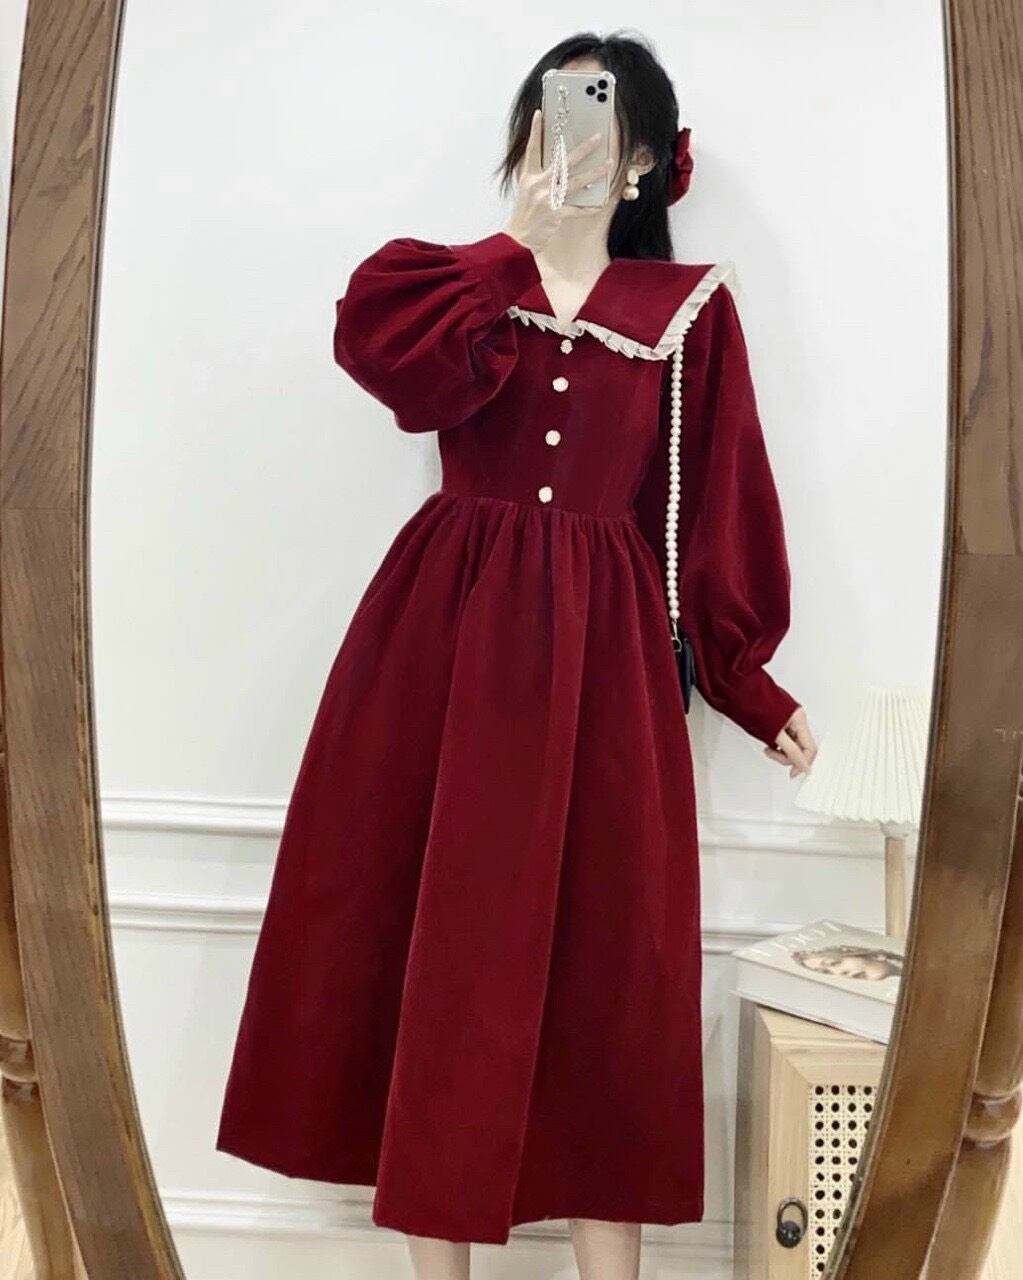 Đầm Nhung Đỏ Sang Chảnh Dáng Xoè Dài Dễ Thương.Váy Tiểu Thư Cổ Điển Vintage  Giá Rẻ, Siêu Đẹp | Lazada.Vn